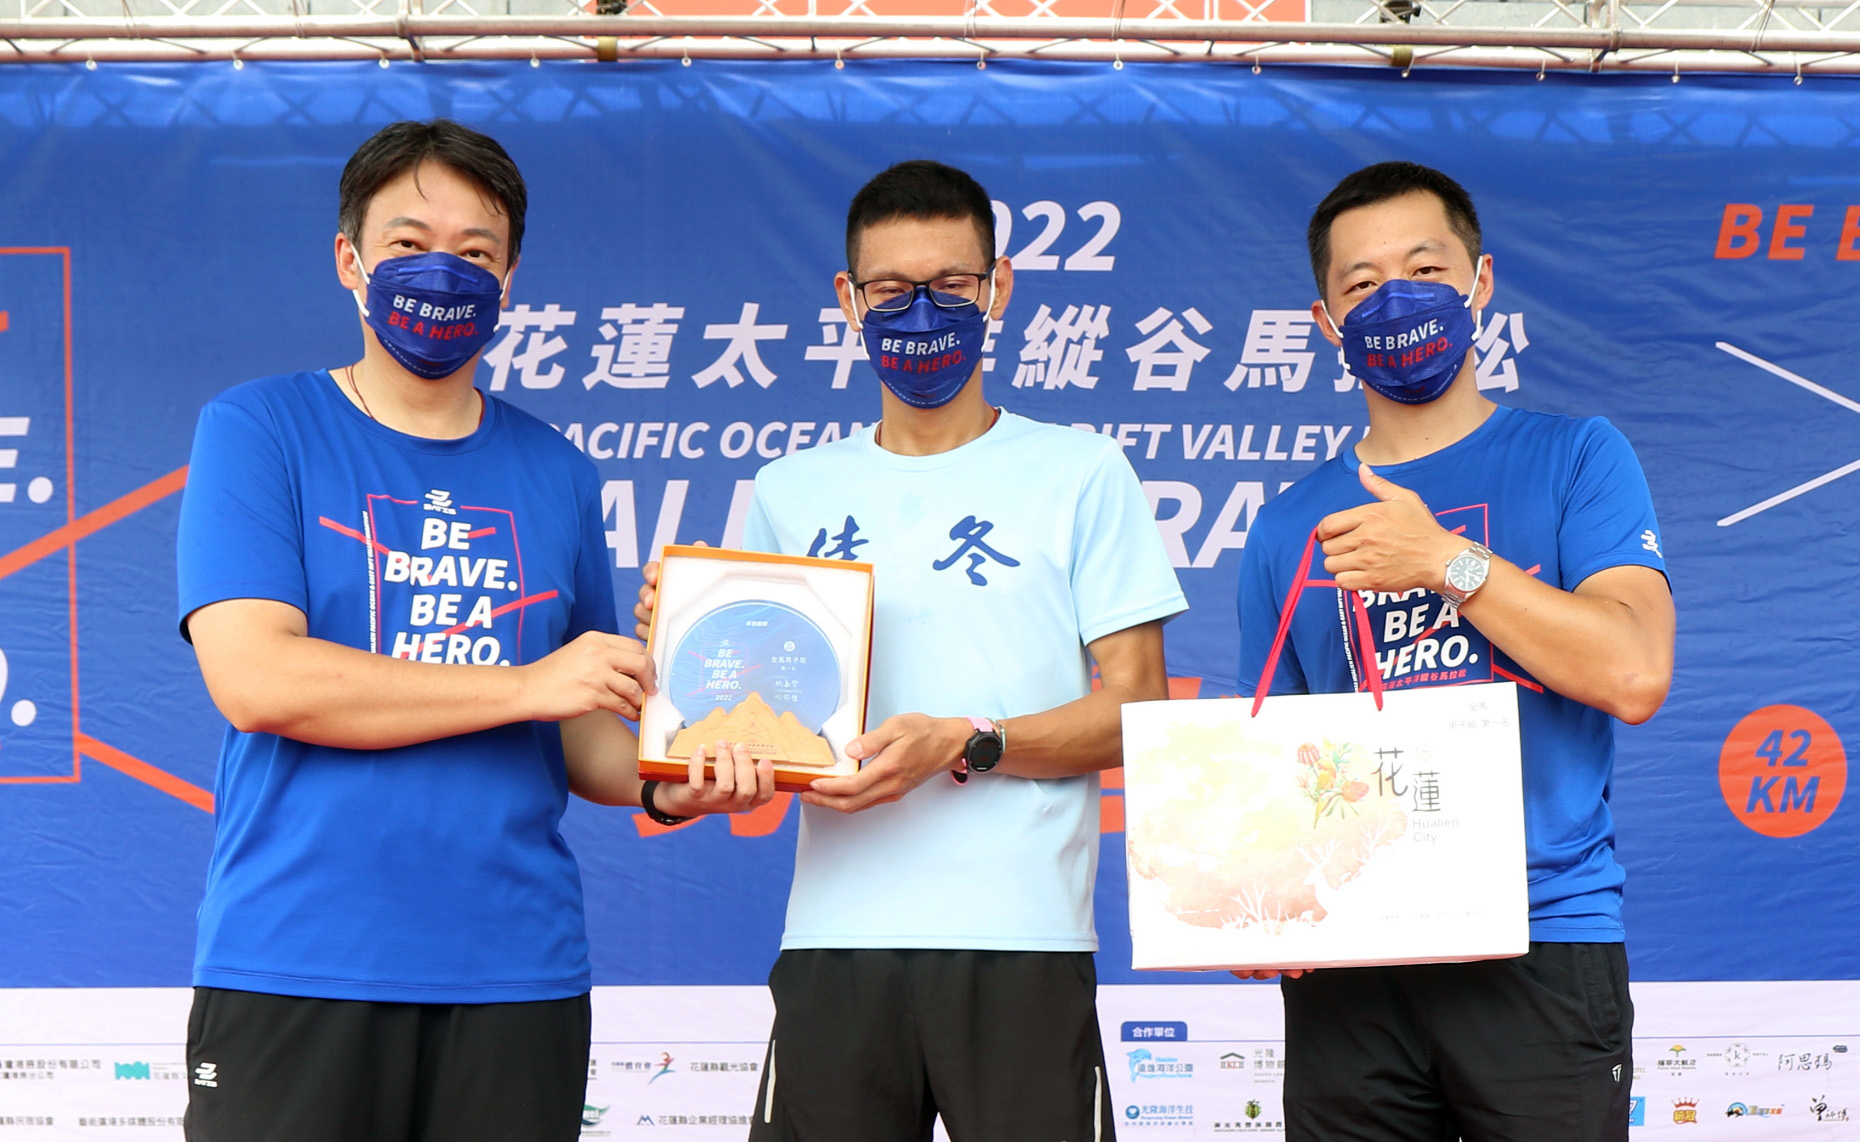 花蓮市長魏嘉賢(左)頒發3萬元獎金男子42公里全程馬拉松組冠軍選手周柏江。蔡宗憲攝